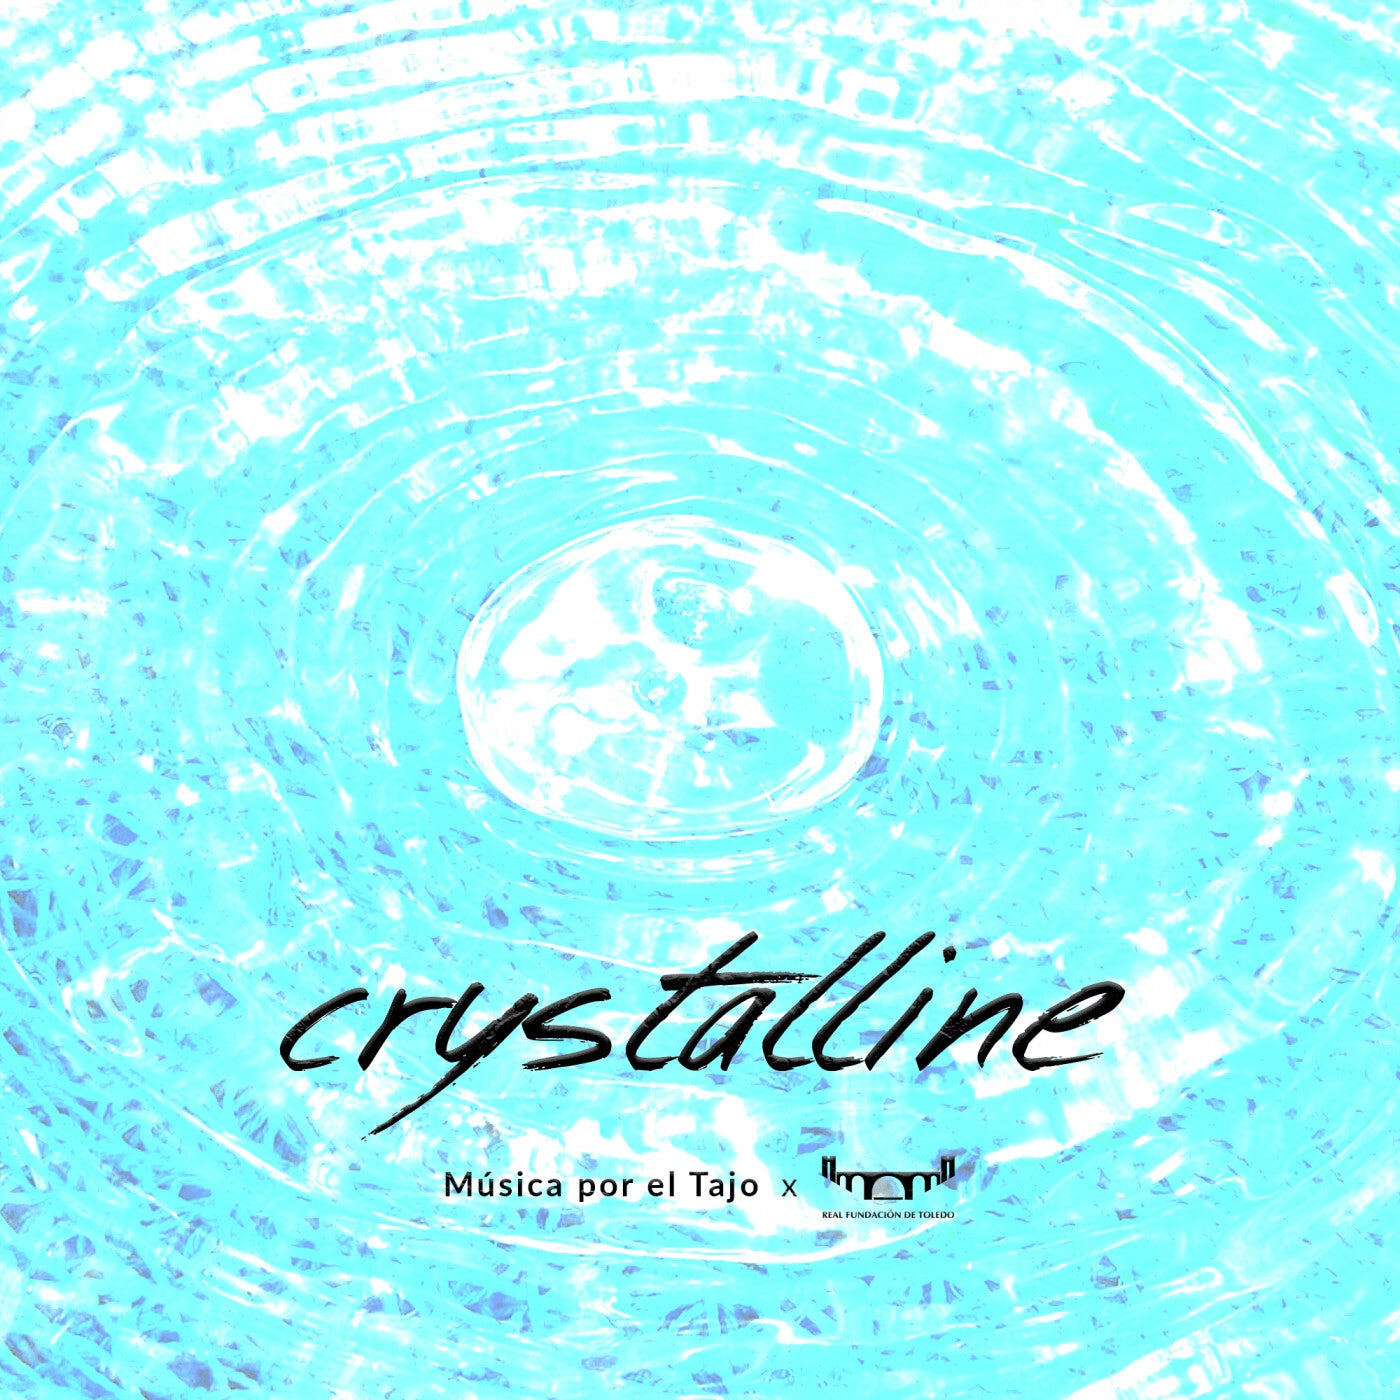 Crystalline (Música por el Tajo)